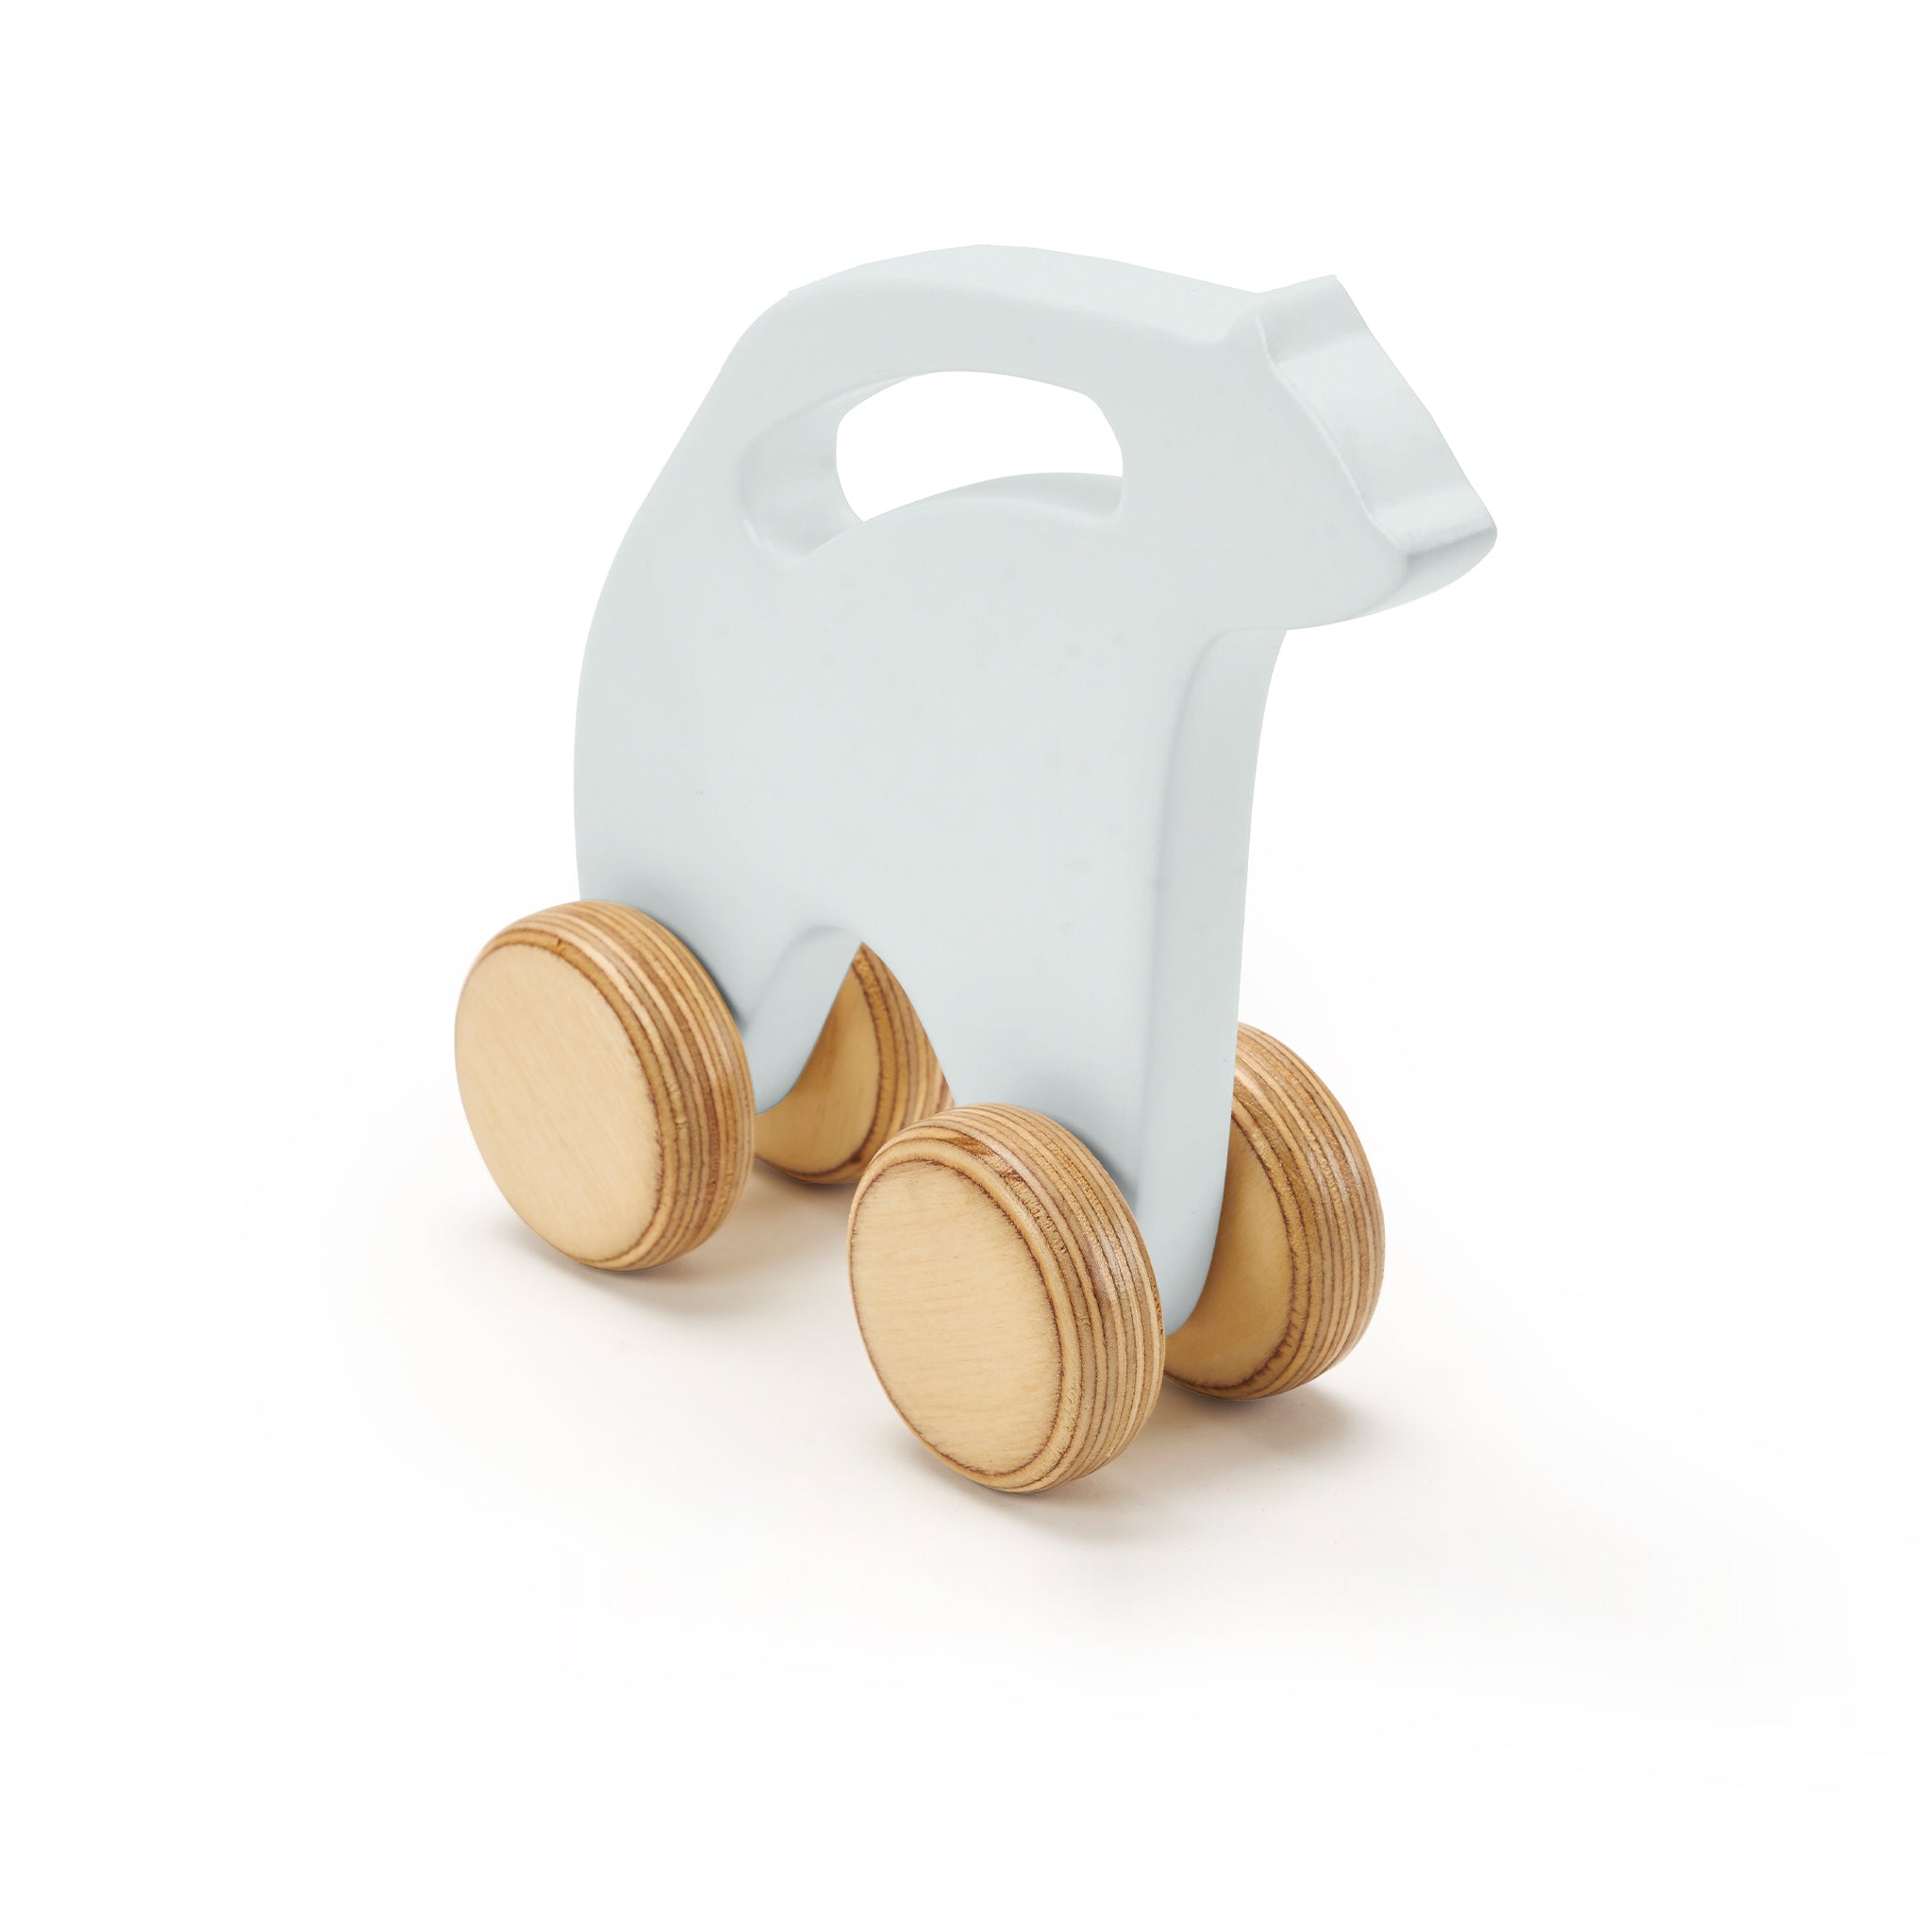 Polar Bear Wheel Wooden Toy